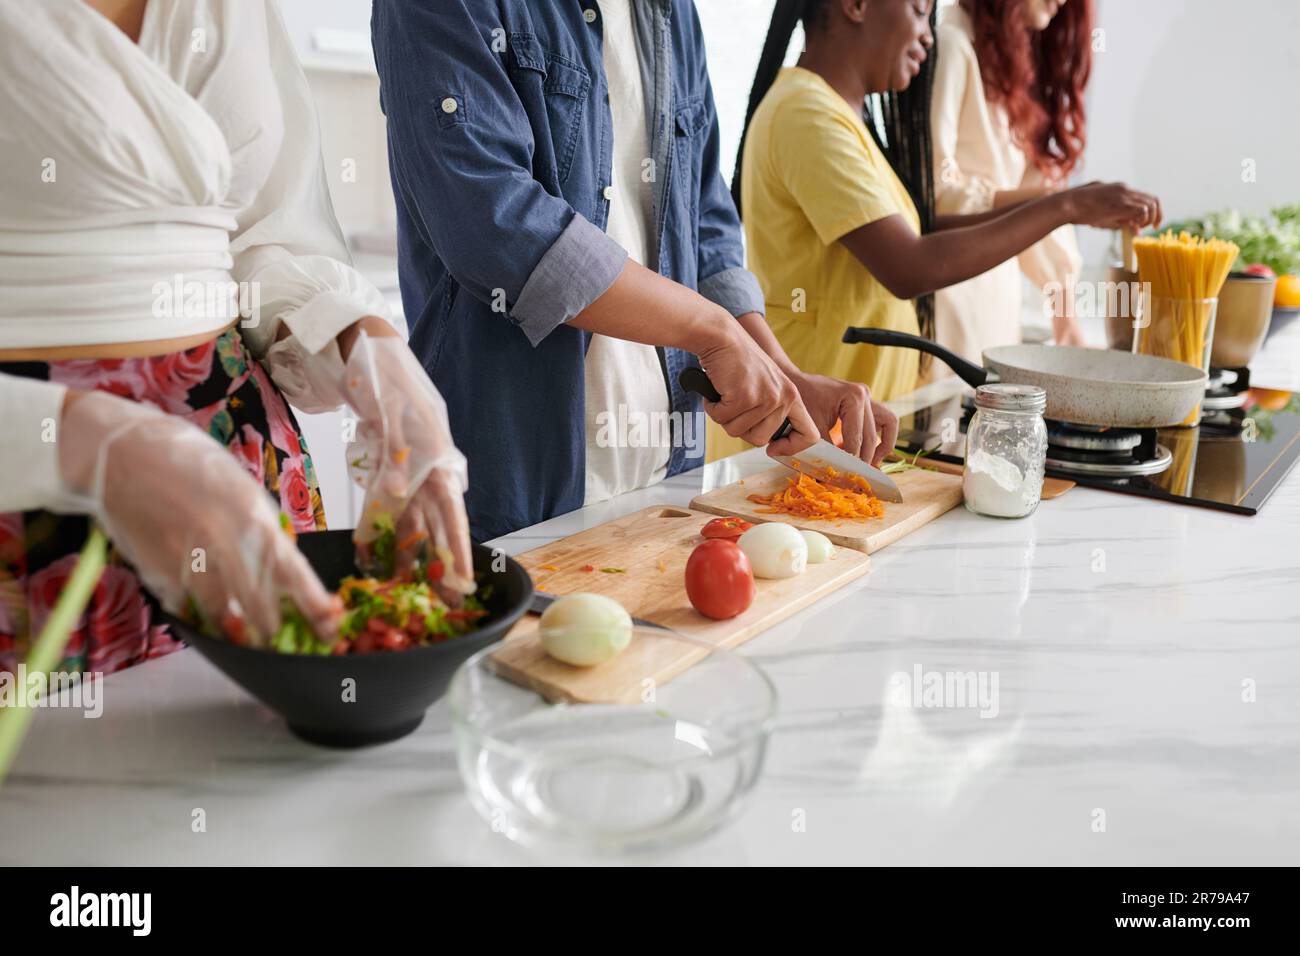 Kurze Aufnahme von jungen interkulturellen Freunden in Freizeitkleidung, die zusammen Essen in der Küche kochen, während einer von ihnen frische Karotten hackt Stockfoto